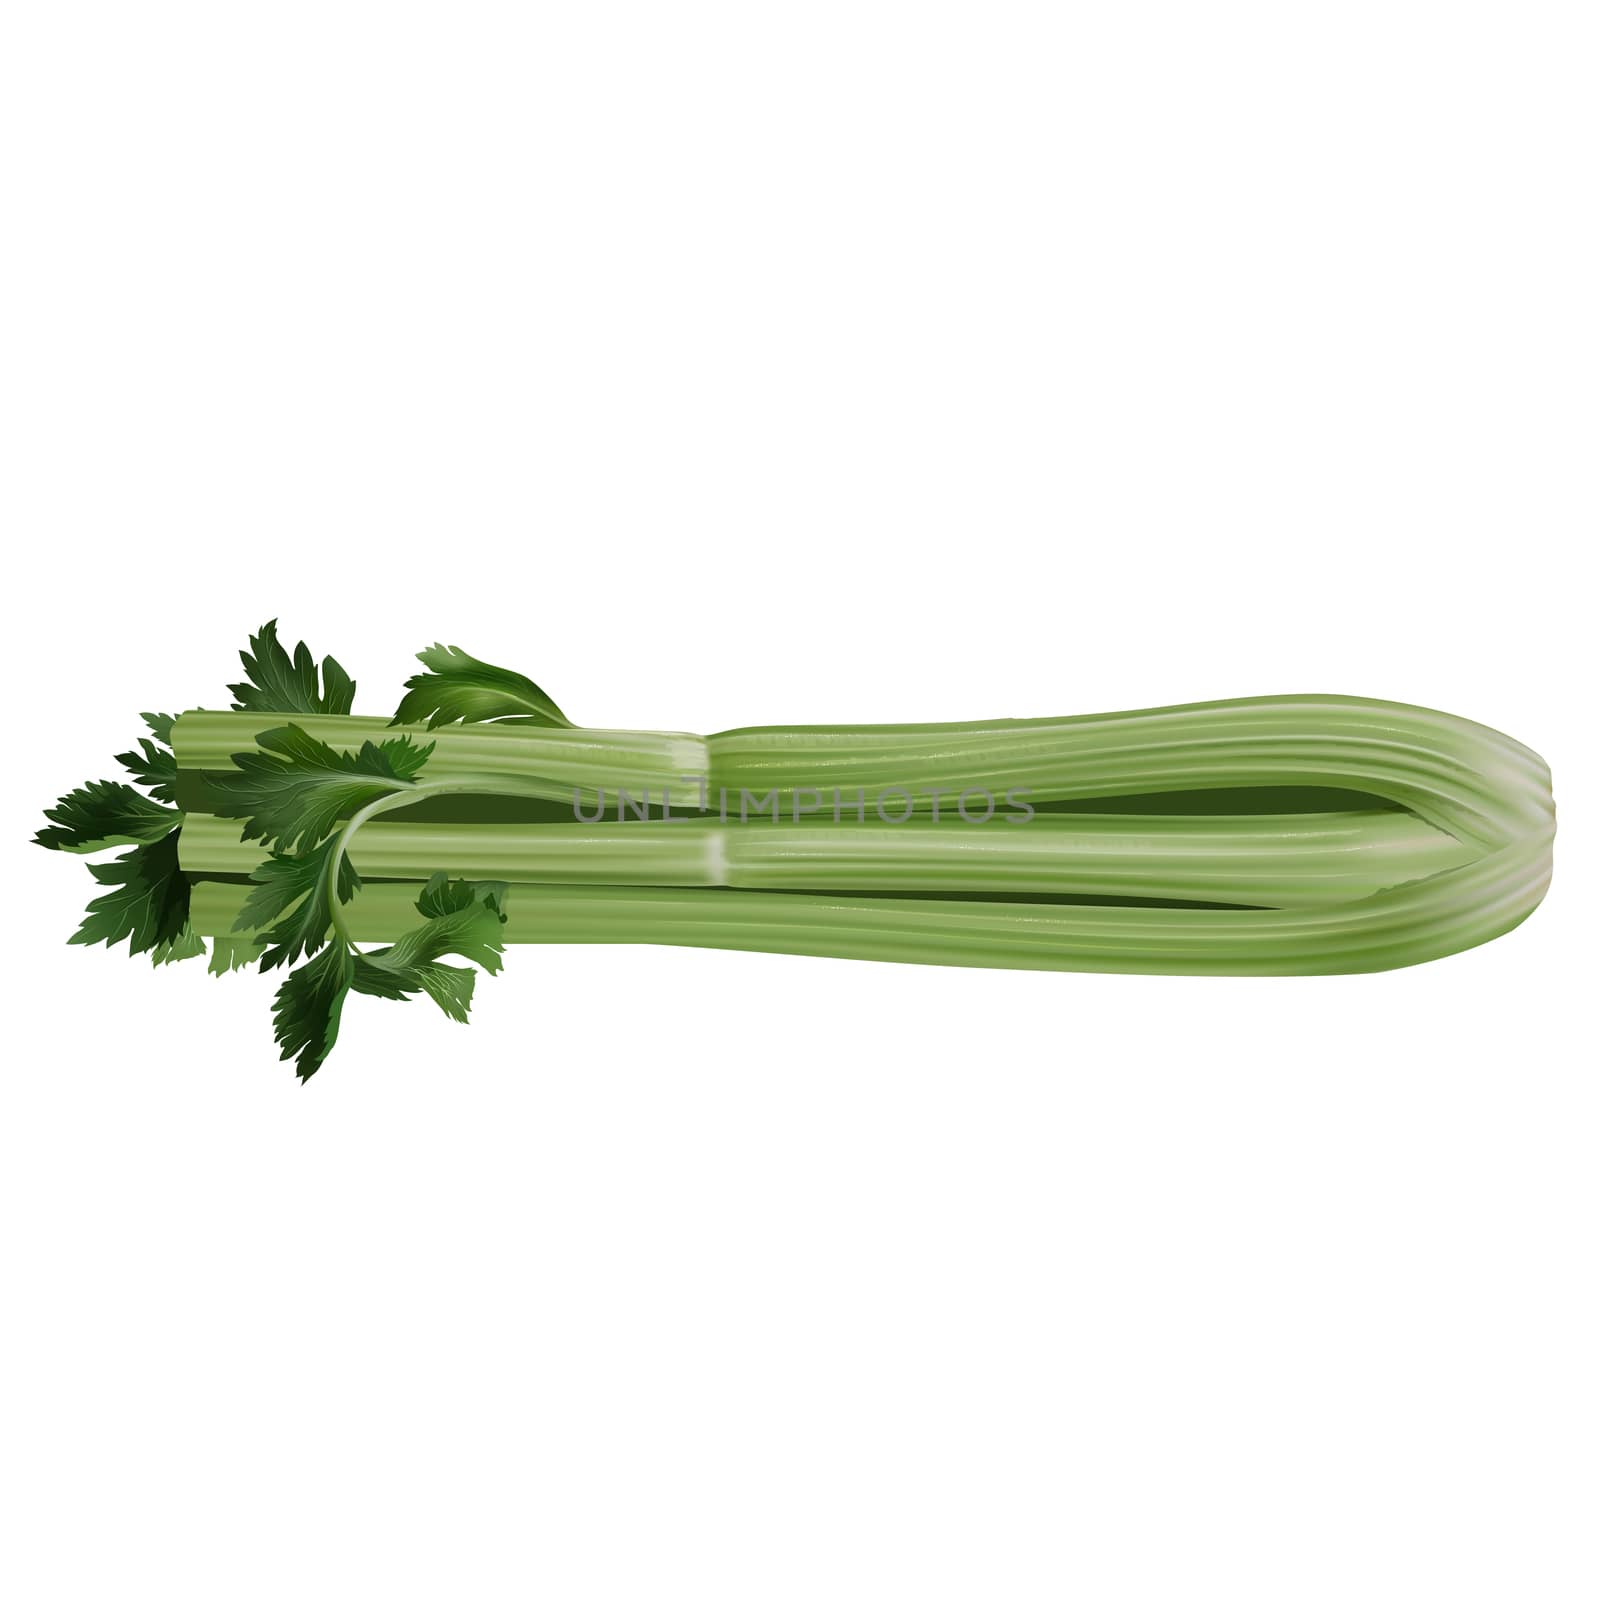 Celery isolated illustration on white background.